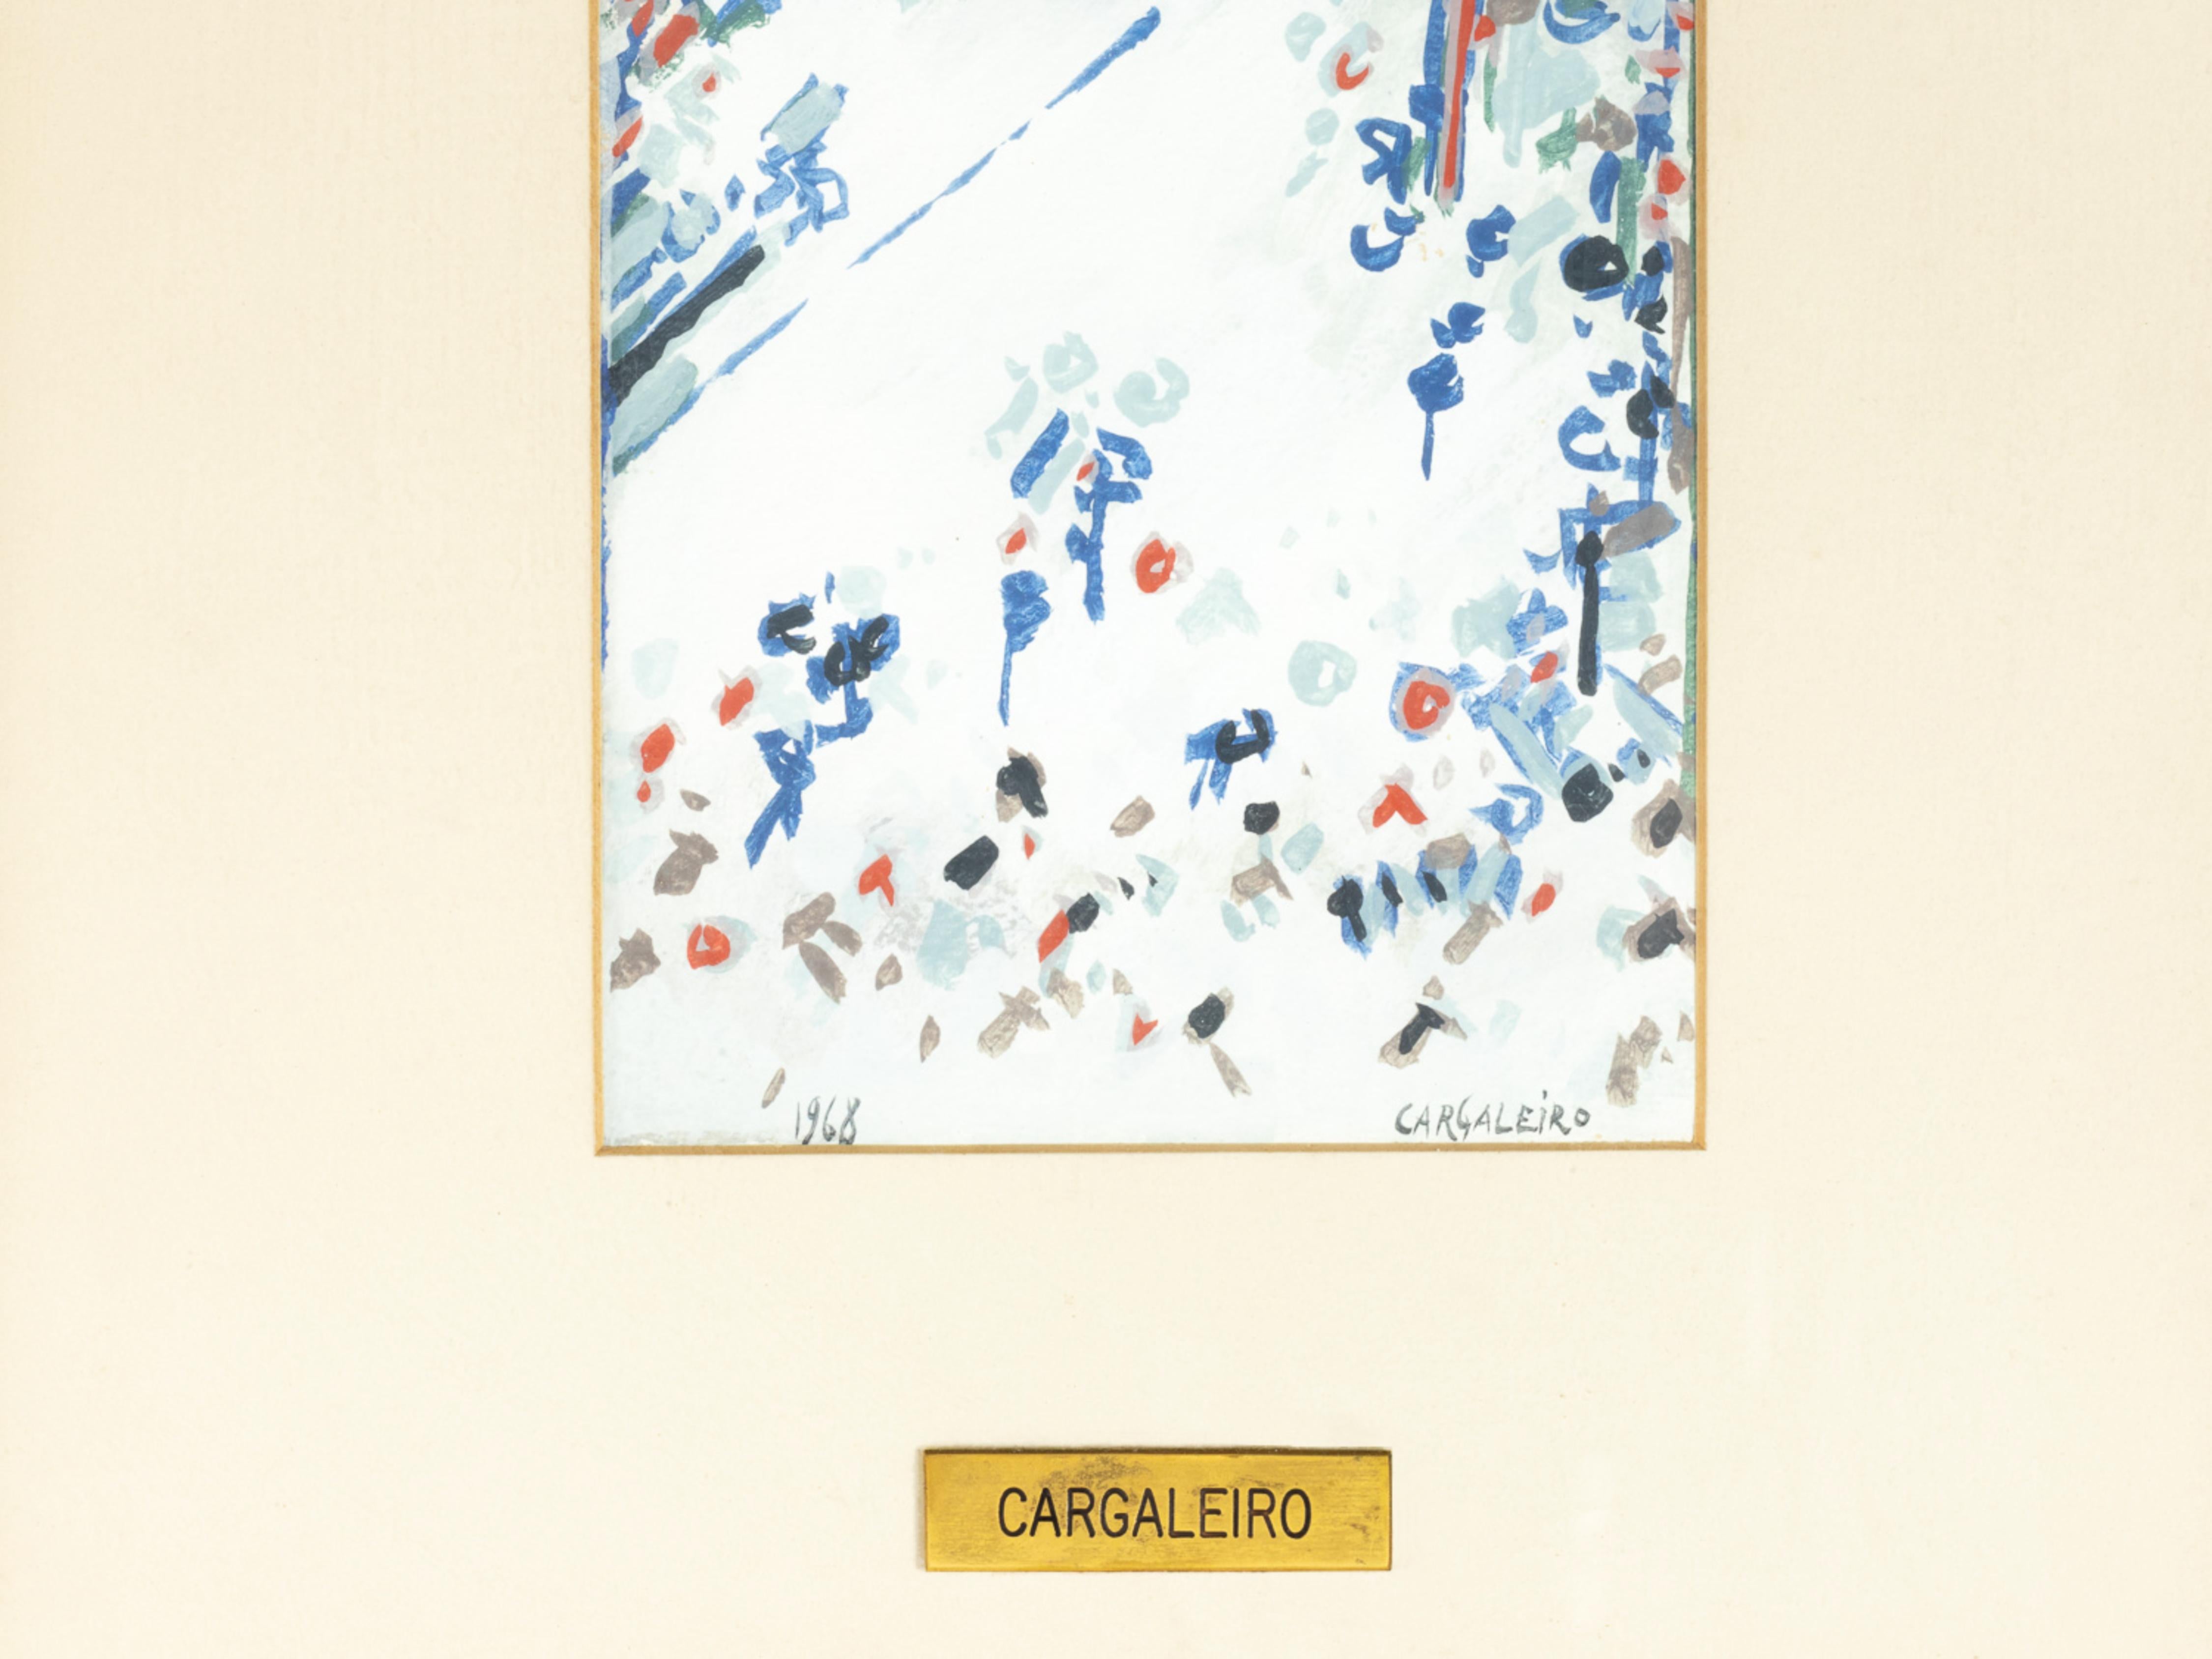 Ein modernistisches Aquarell des portugiesischen Meisters Manuel Cargaleiro, signiert, datiert und beglaubigt - 1968. 

In der internationalen Kunstszene erlangte Manuel Cargareiro Berühmtheit, indem er seine Werke in Brasilien, Japan und